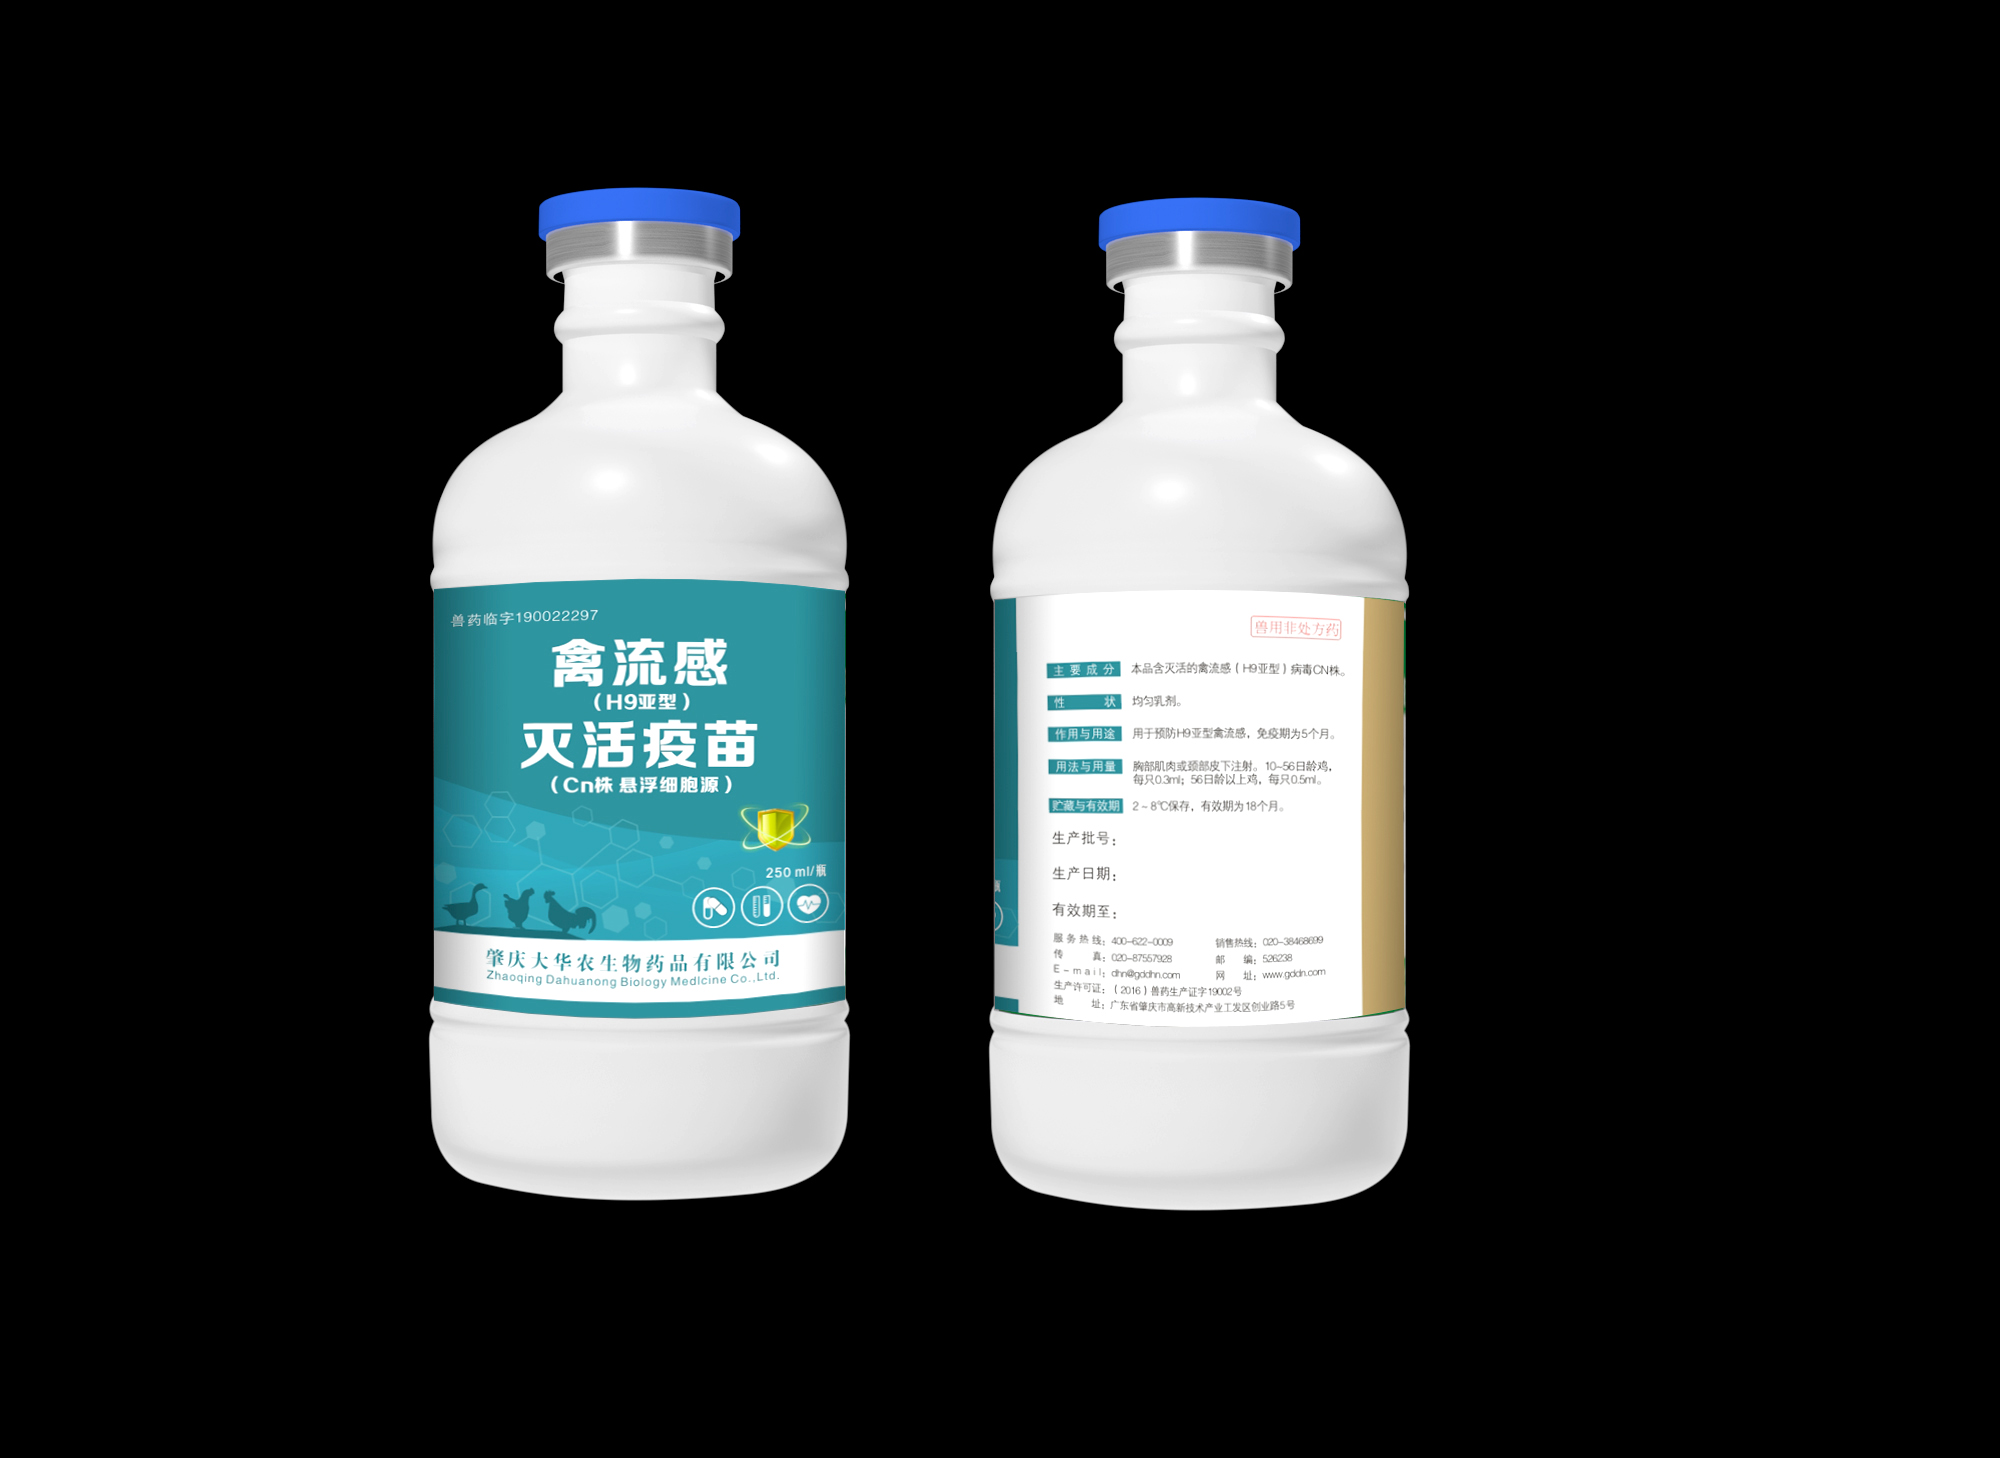 李泉辉的禽流感疫苗瓶子标签设计logo设计